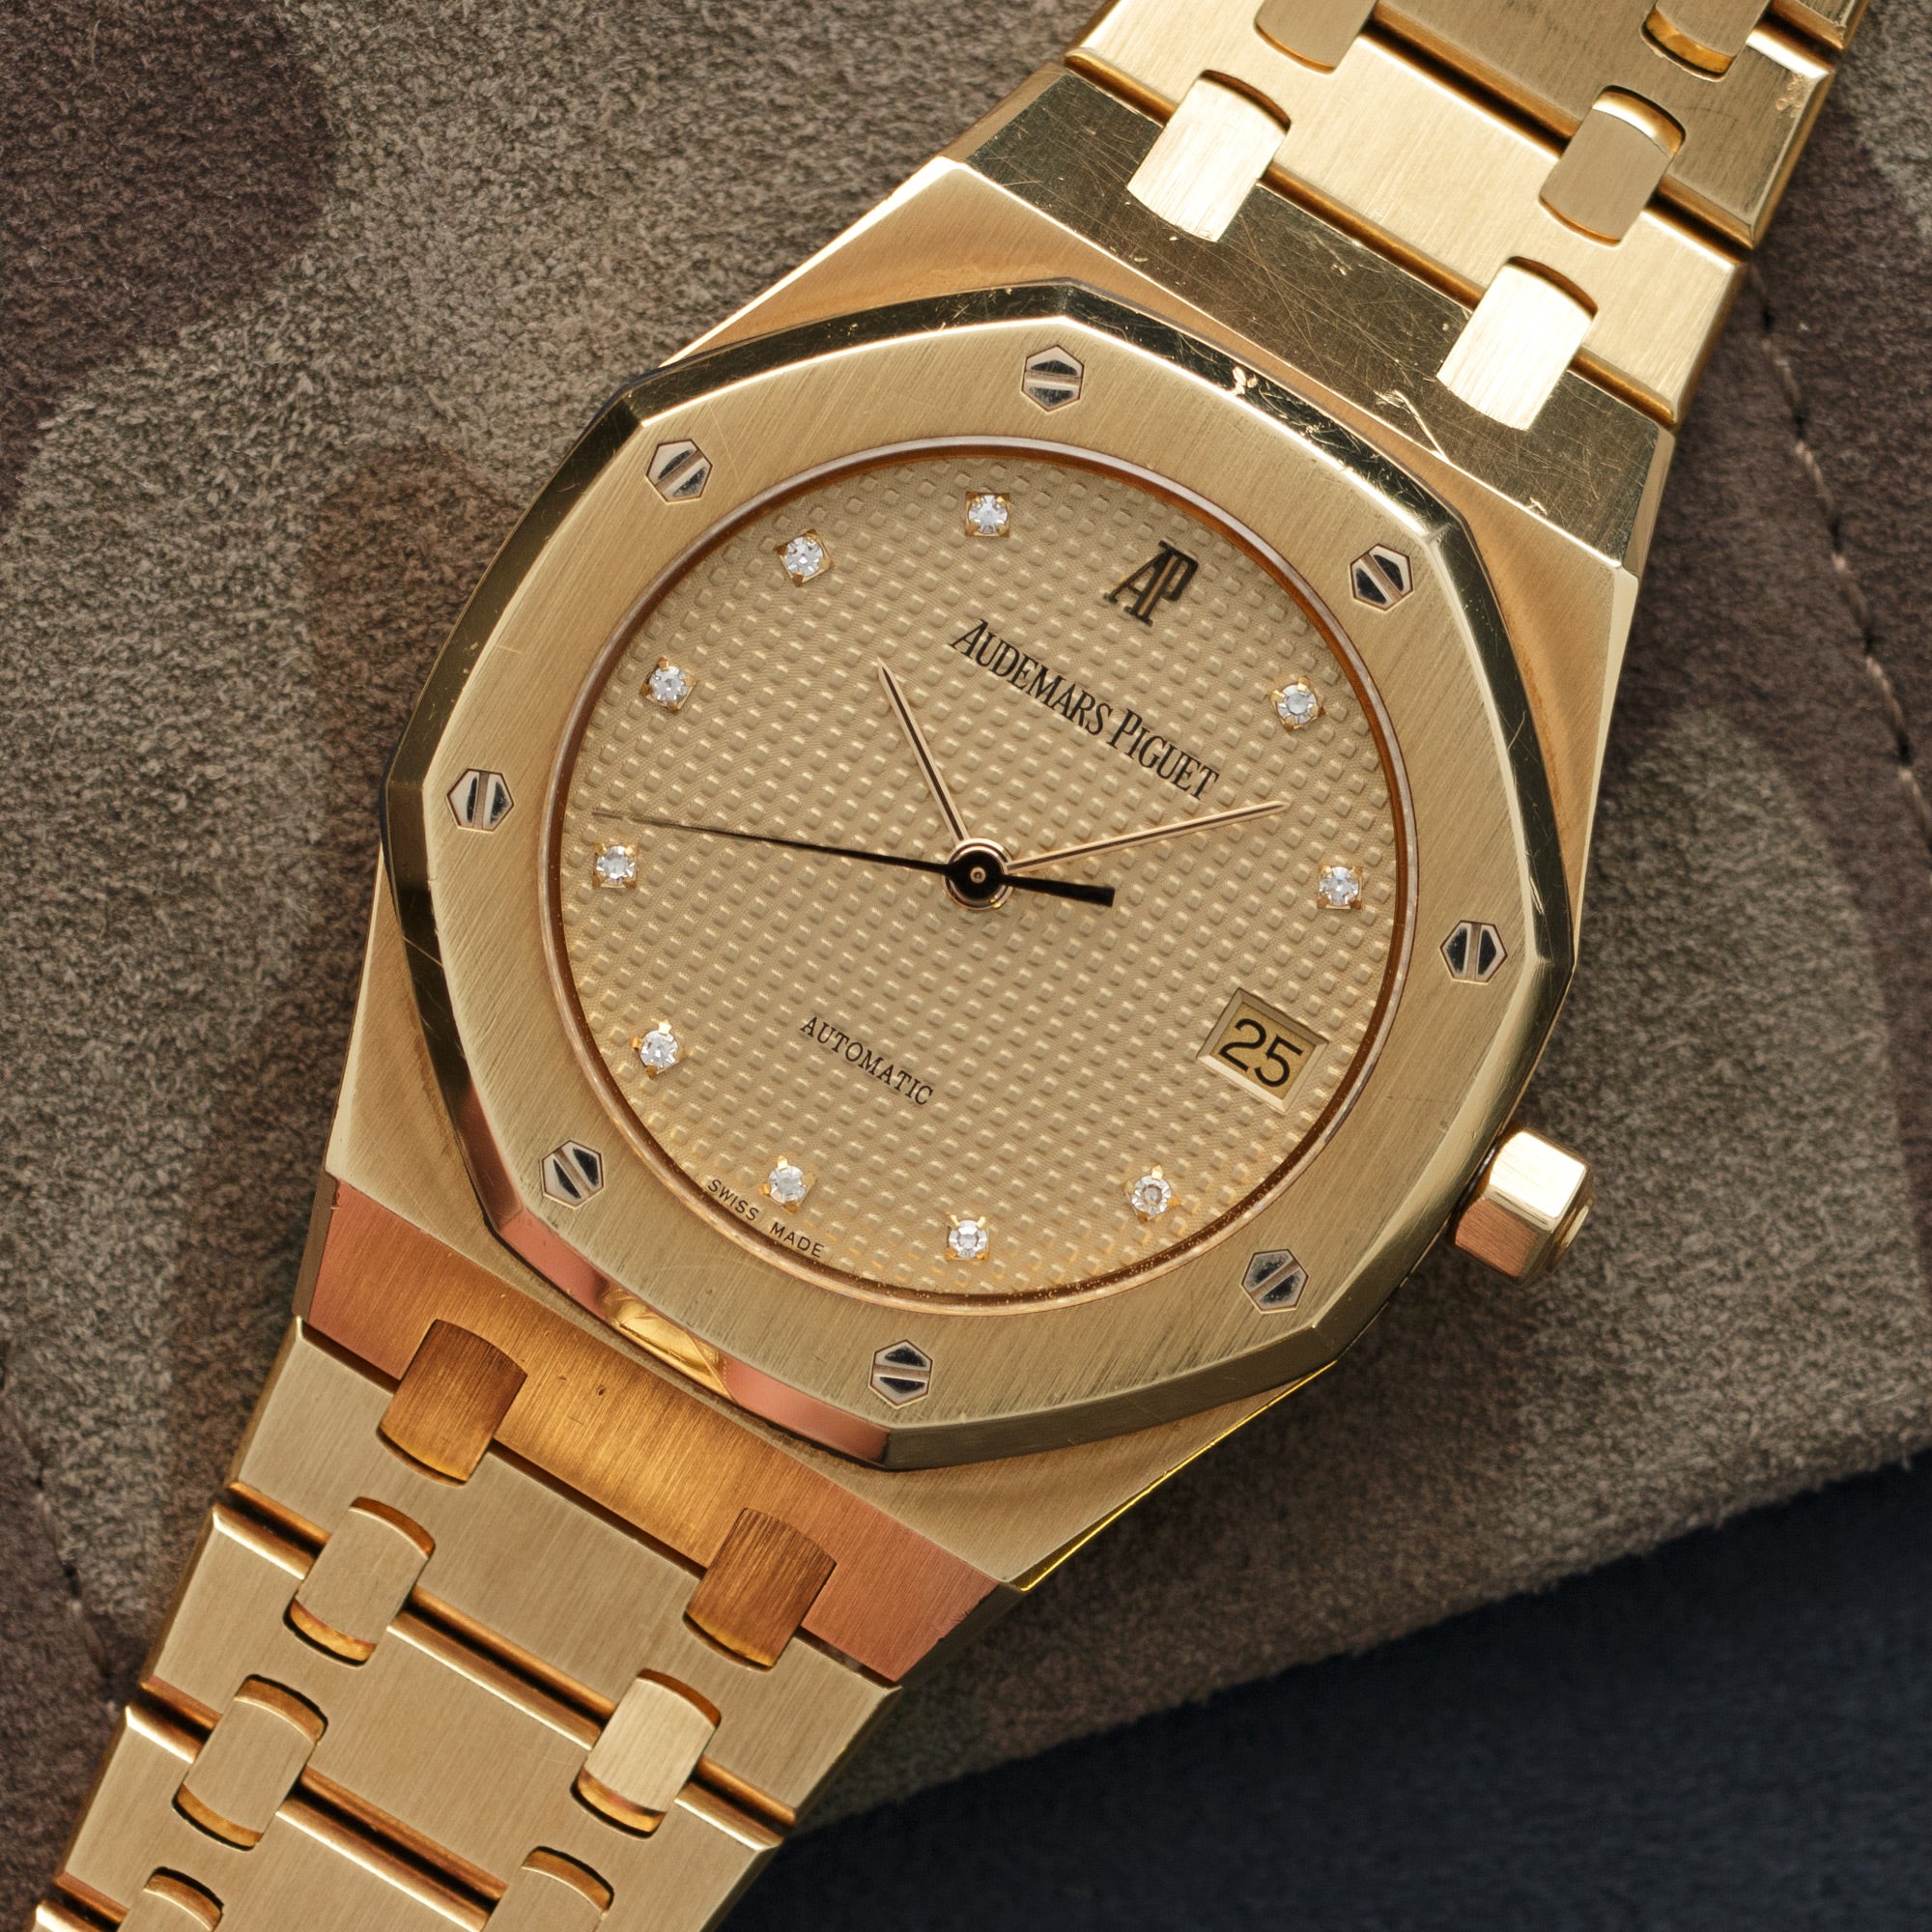 Audemars Piguet - Audemars Piguet Yellow Gold Royal Oak Diamond Watch Ref. 15000 - The Keystone Watches